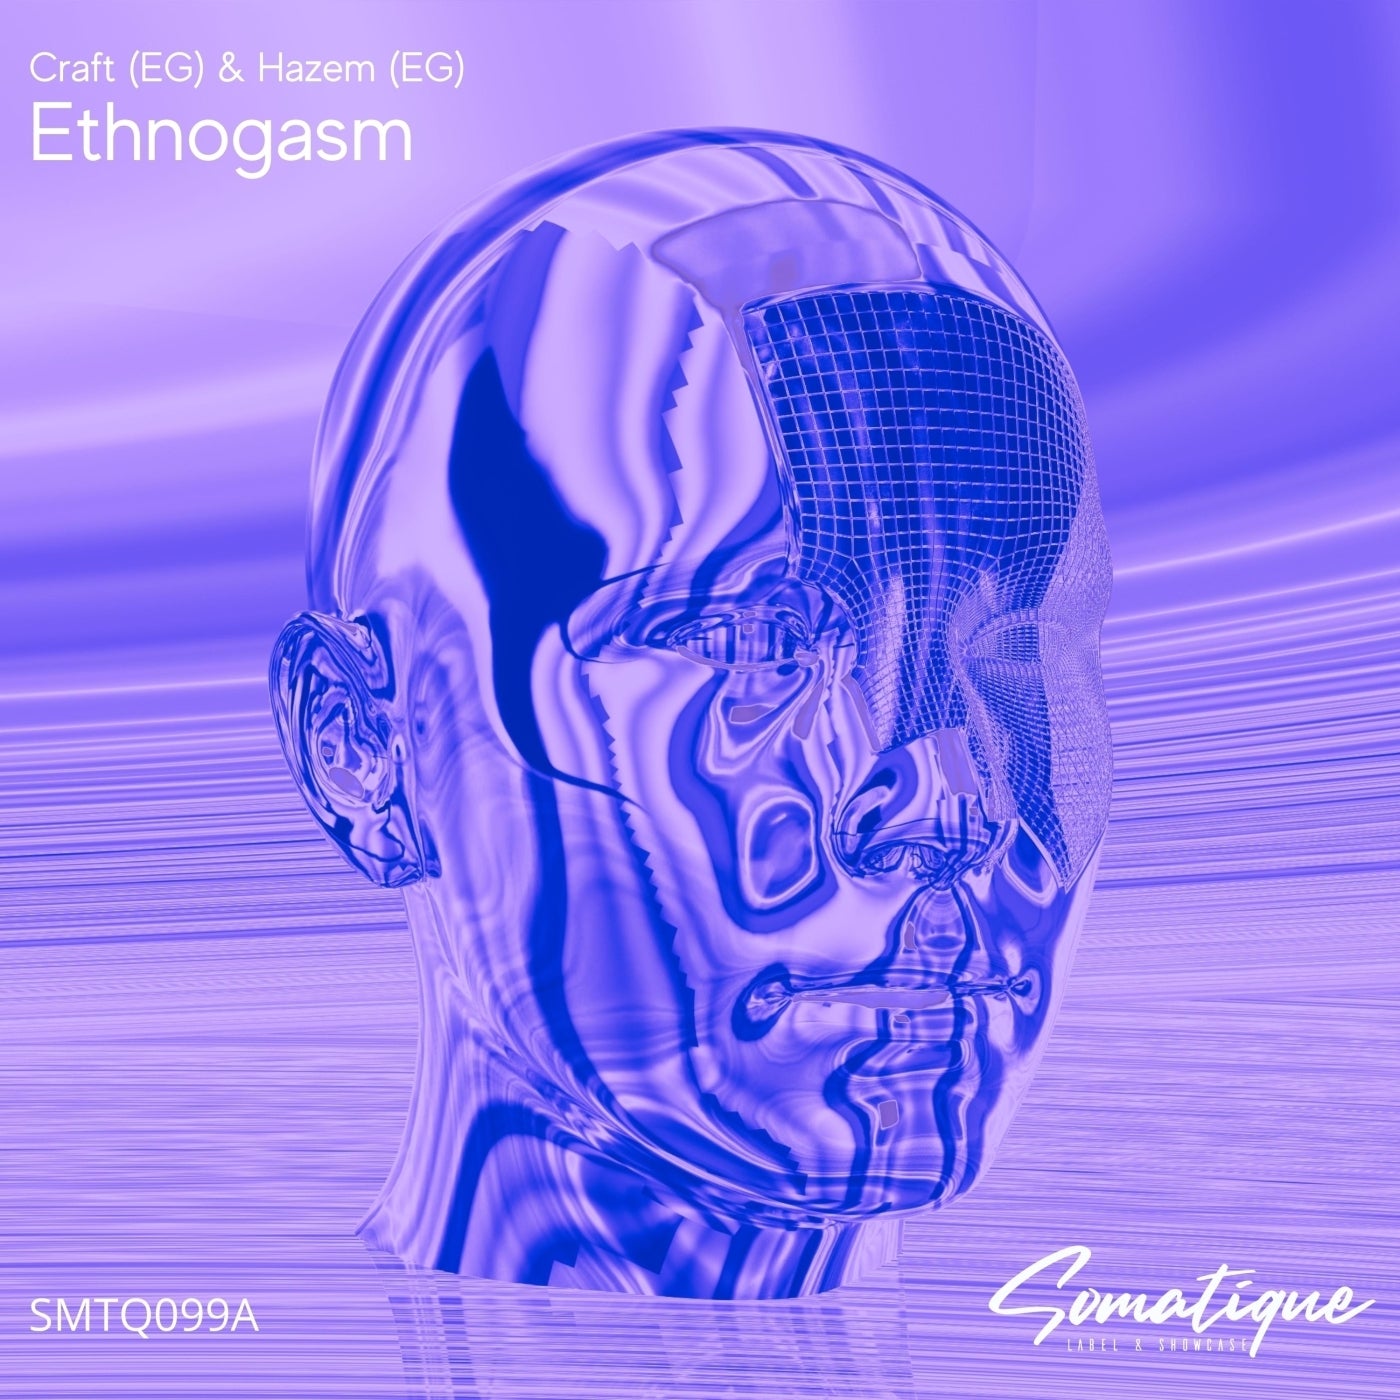 Ethnogasm